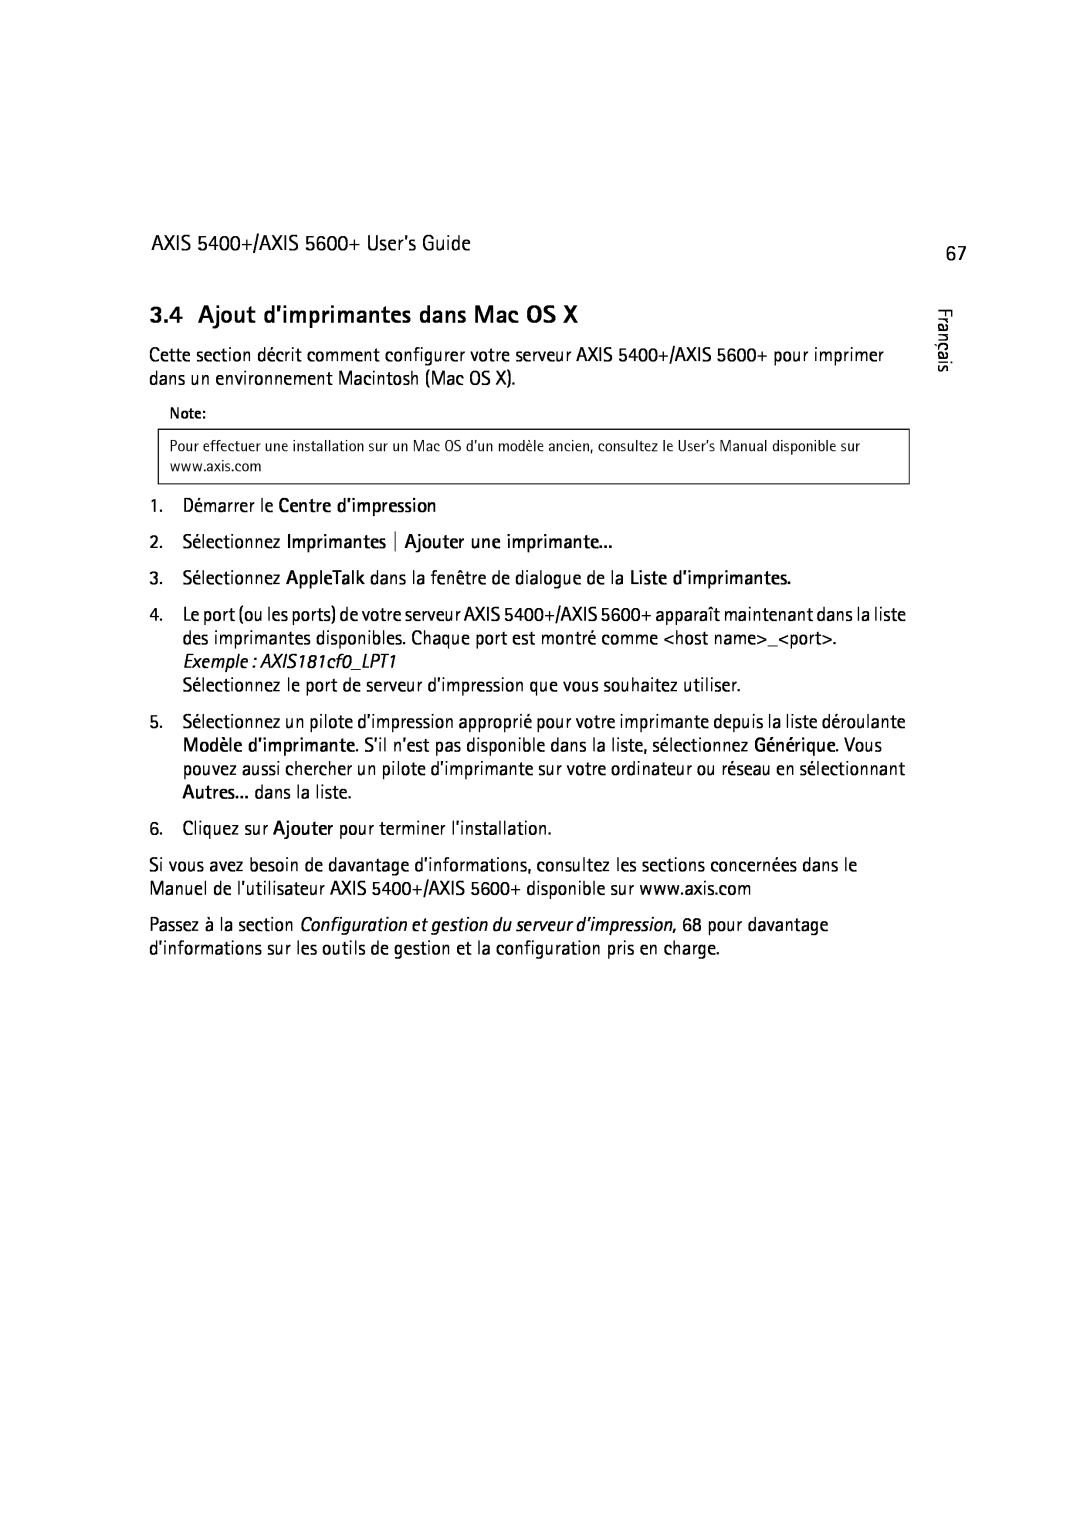 Dell manual Ajout d’imprimantes dans Mac OS, 1. Démarrer le Centre d’impression, AXIS 5400+/AXIS 5600+ User’s Guide 